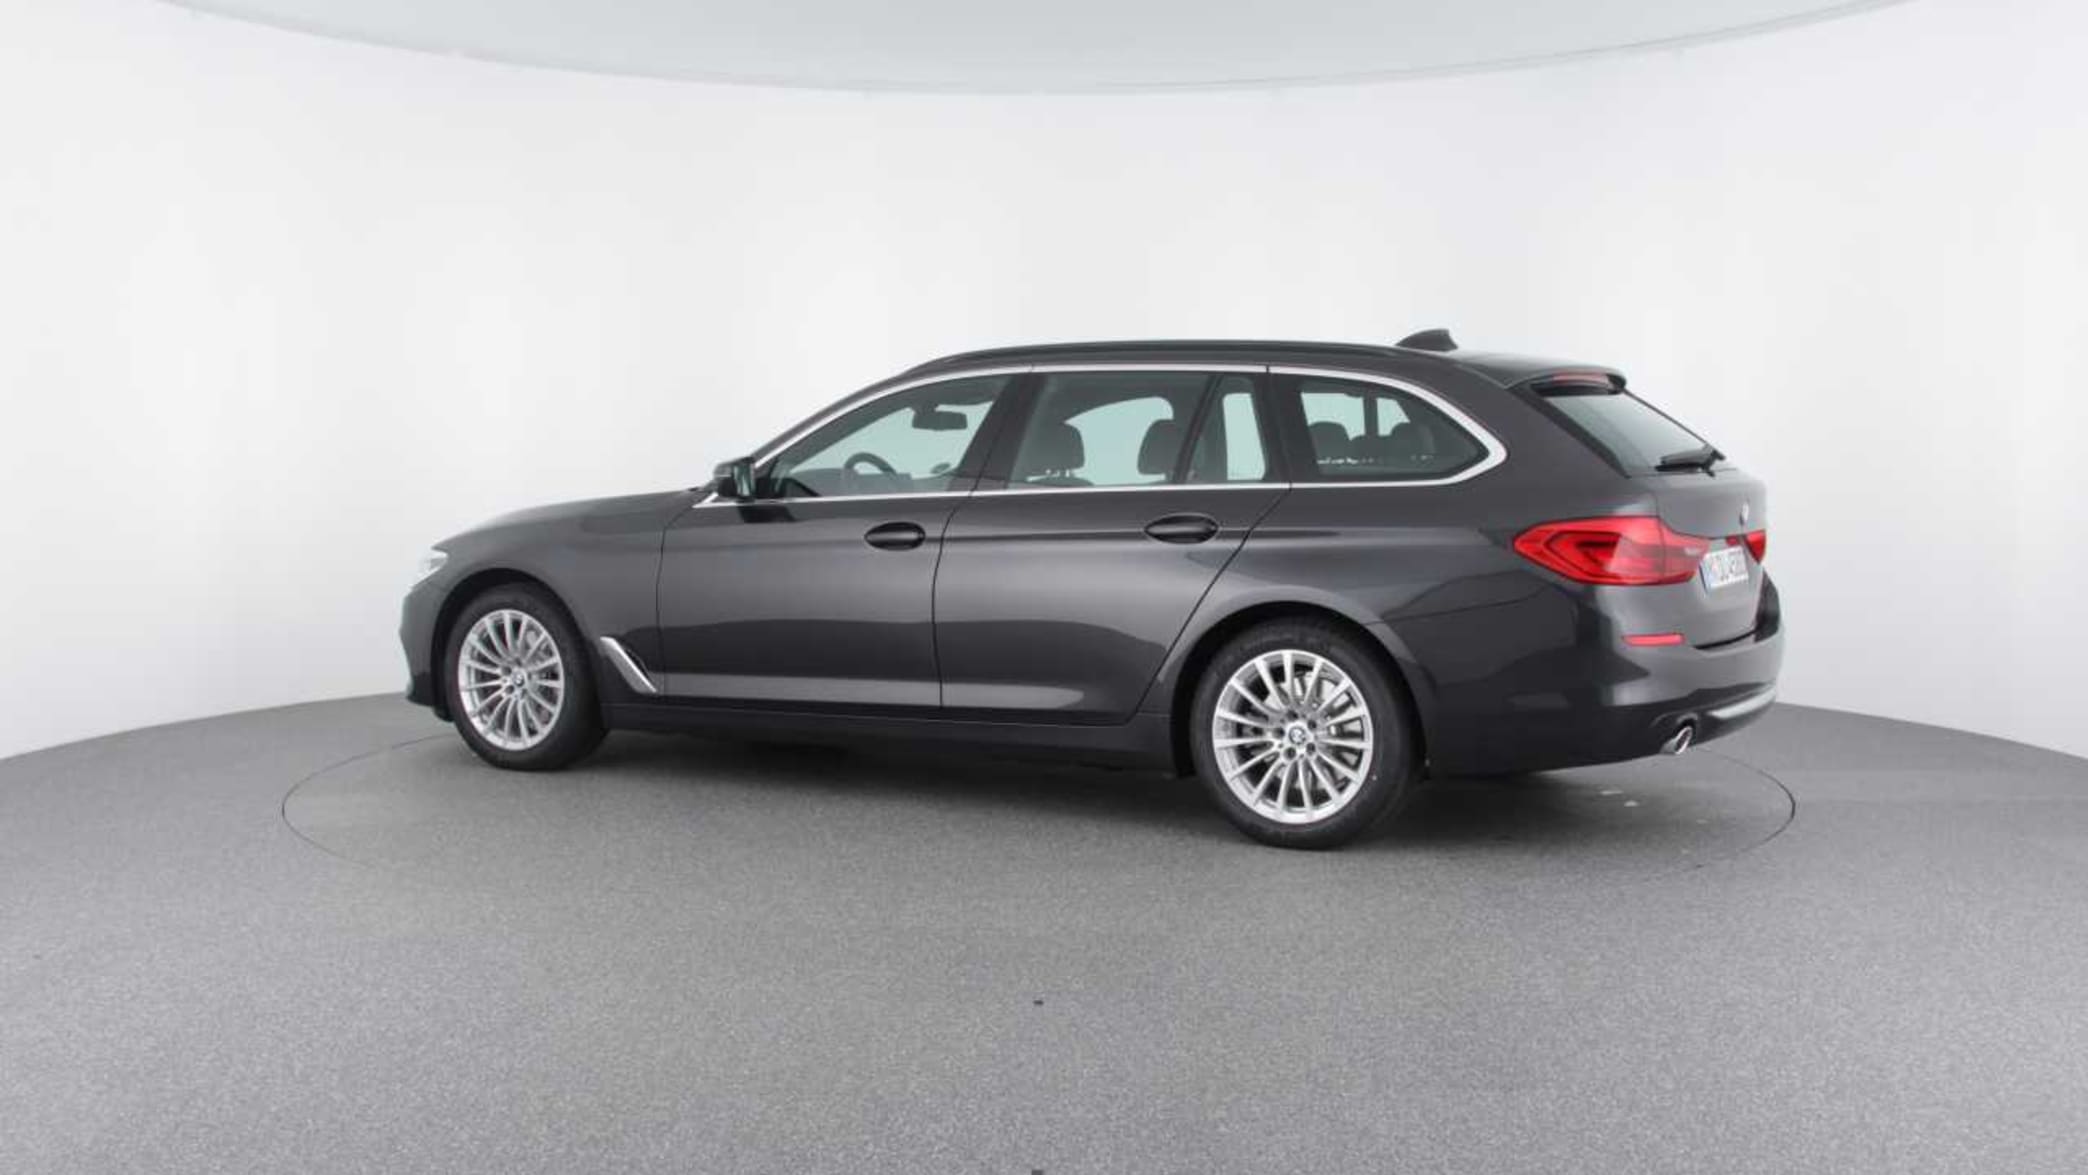 Der neue BMW 5er Touring (G31): Innenraum und Variabilität